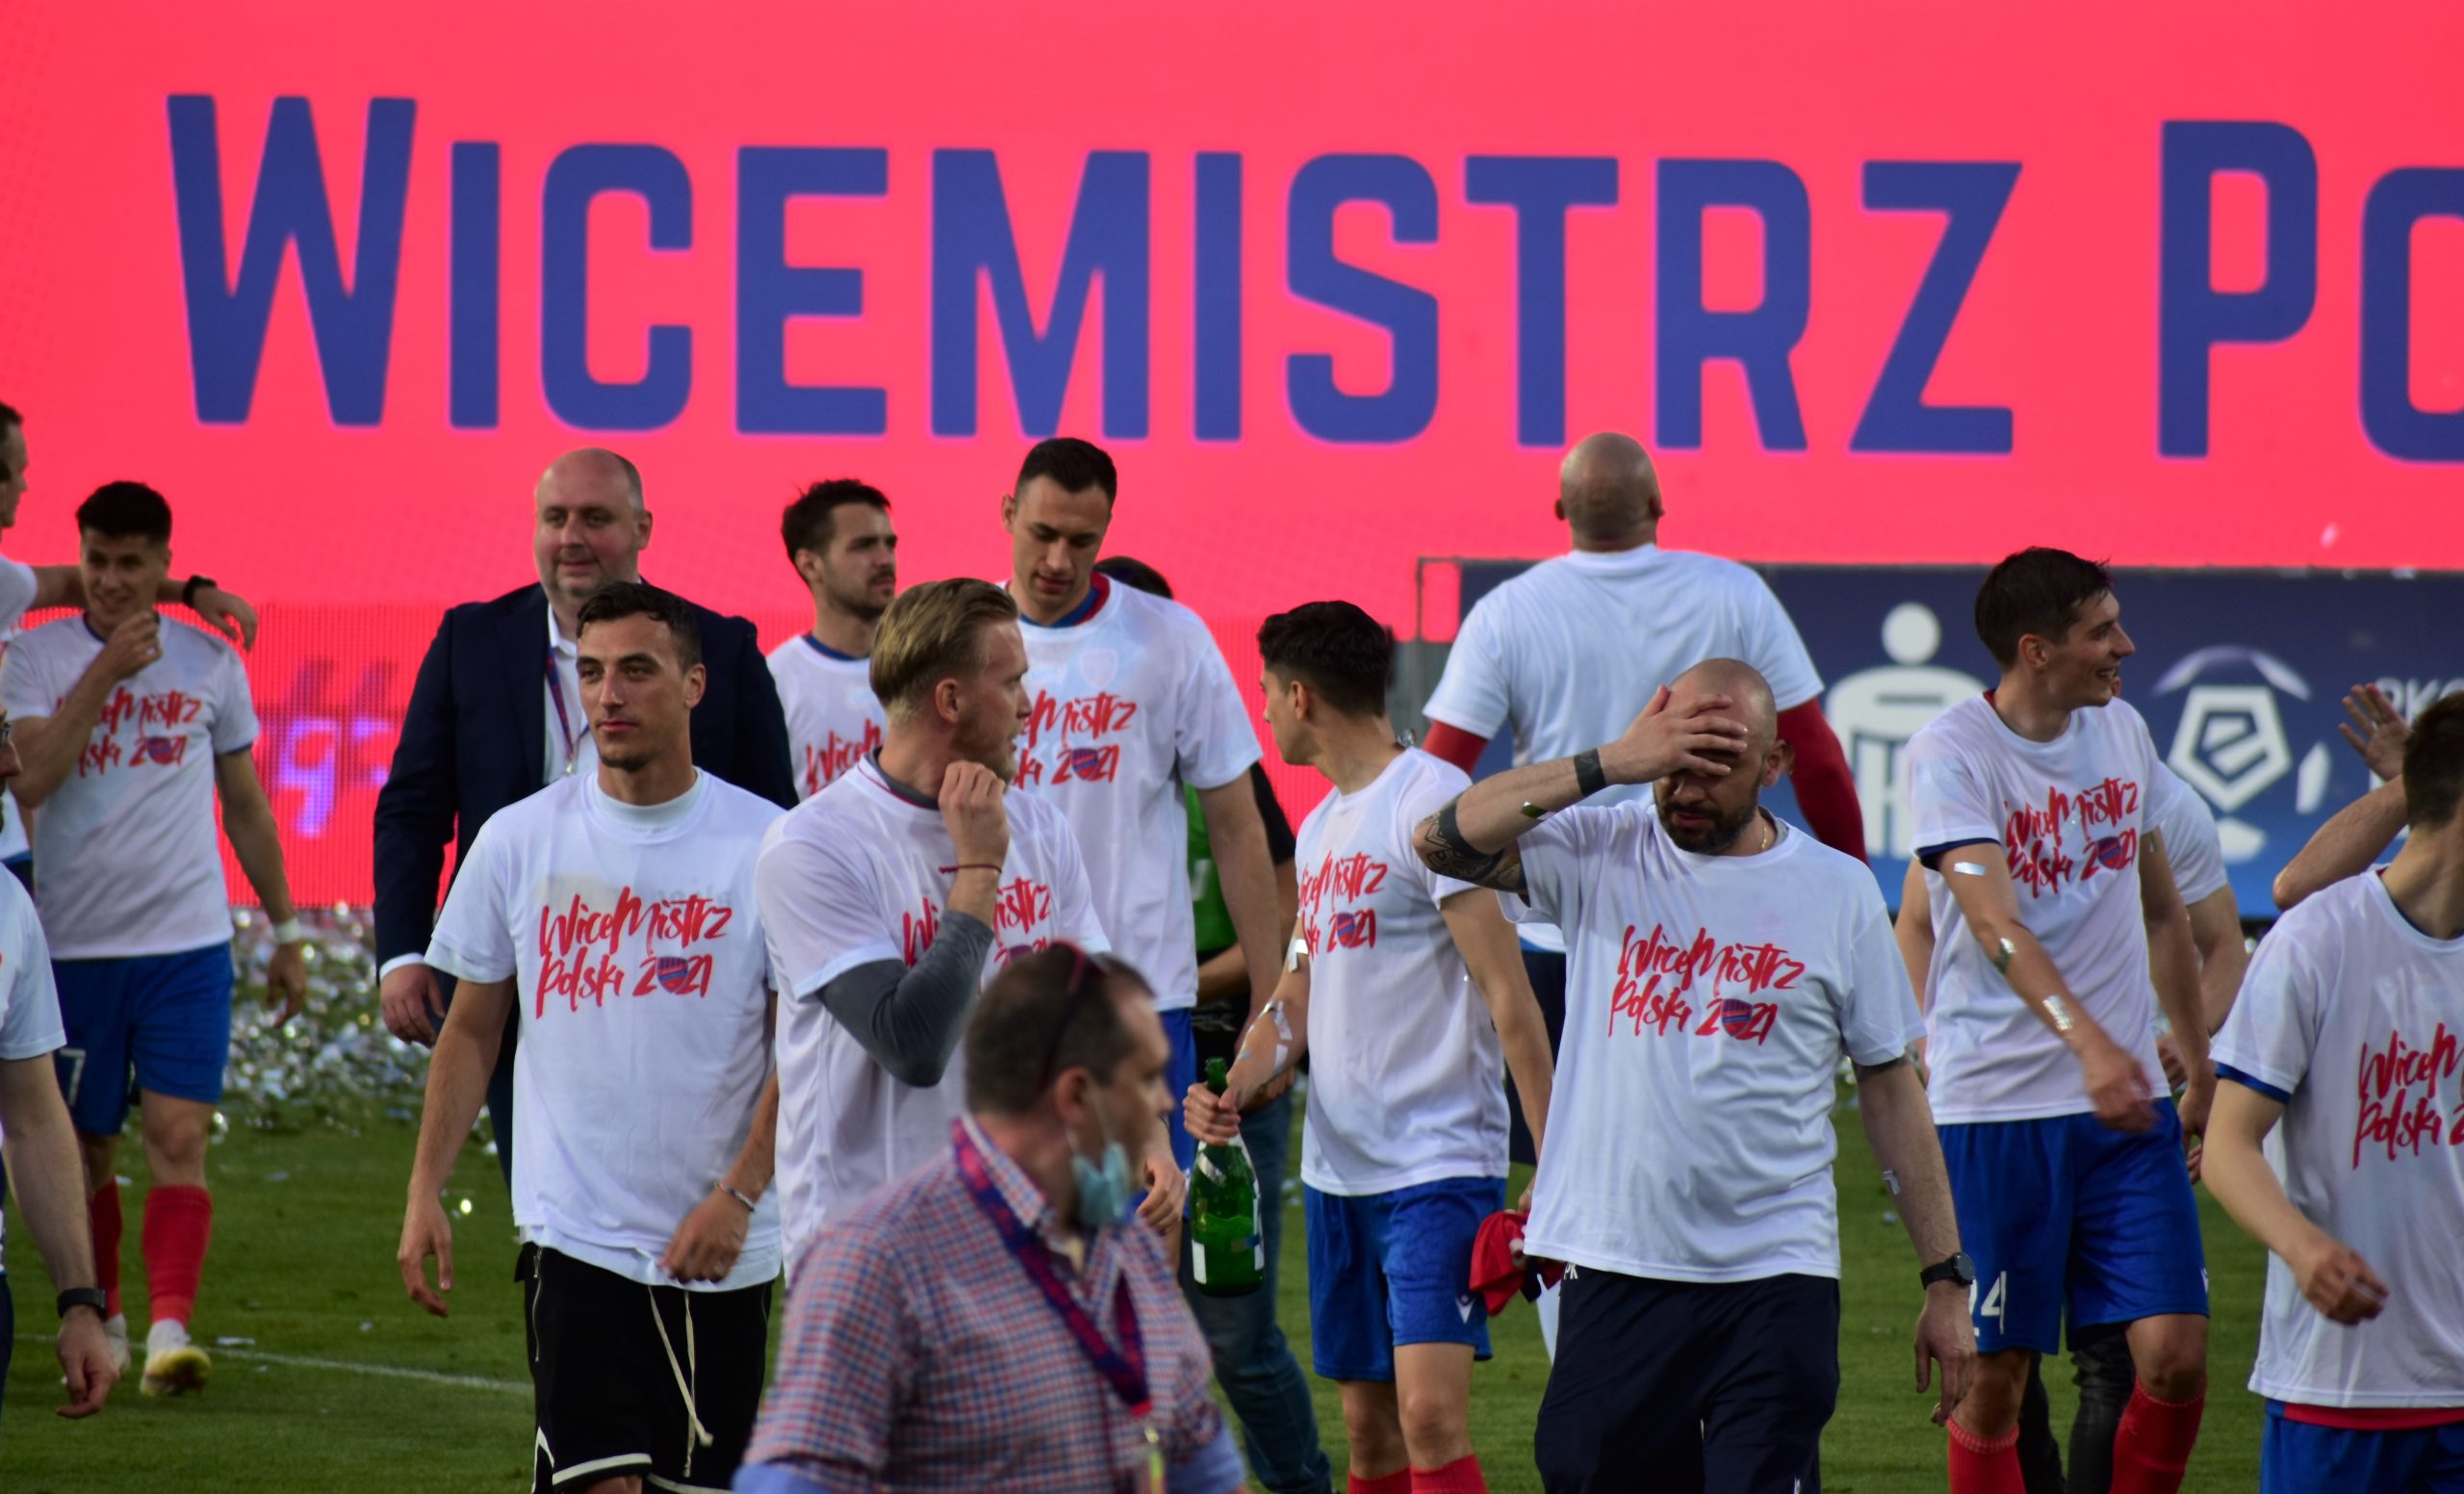 Raków wygrał w Szczecinie na zakończenie sezonu 2020/21 w PKO BP Ekstraklasie i potwierdził, że jest nieprzypadkowym wicemistrzem Polski!!! 6